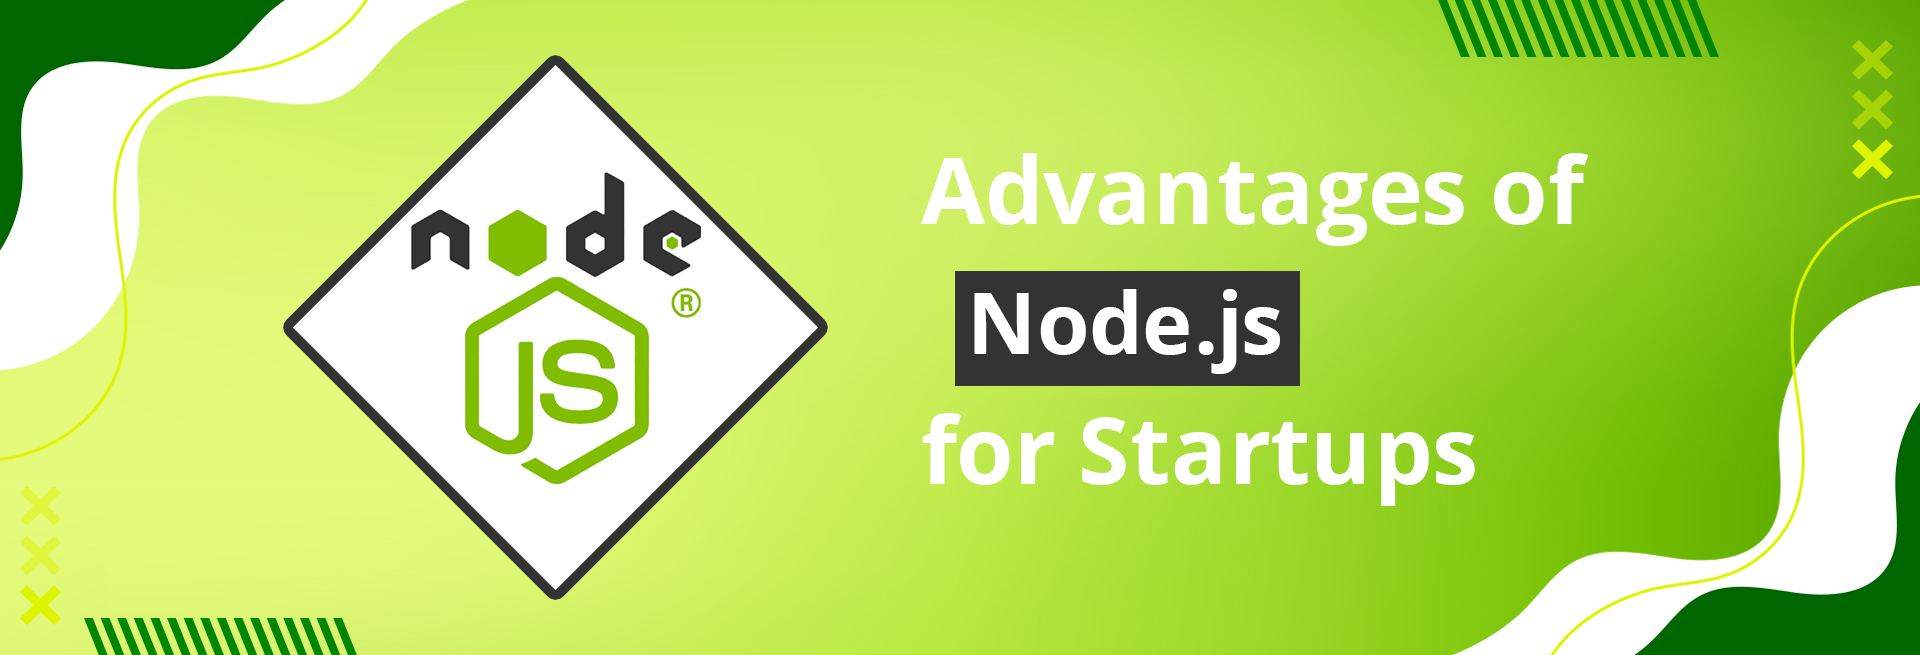 7 Advantages of Node.js for Startups